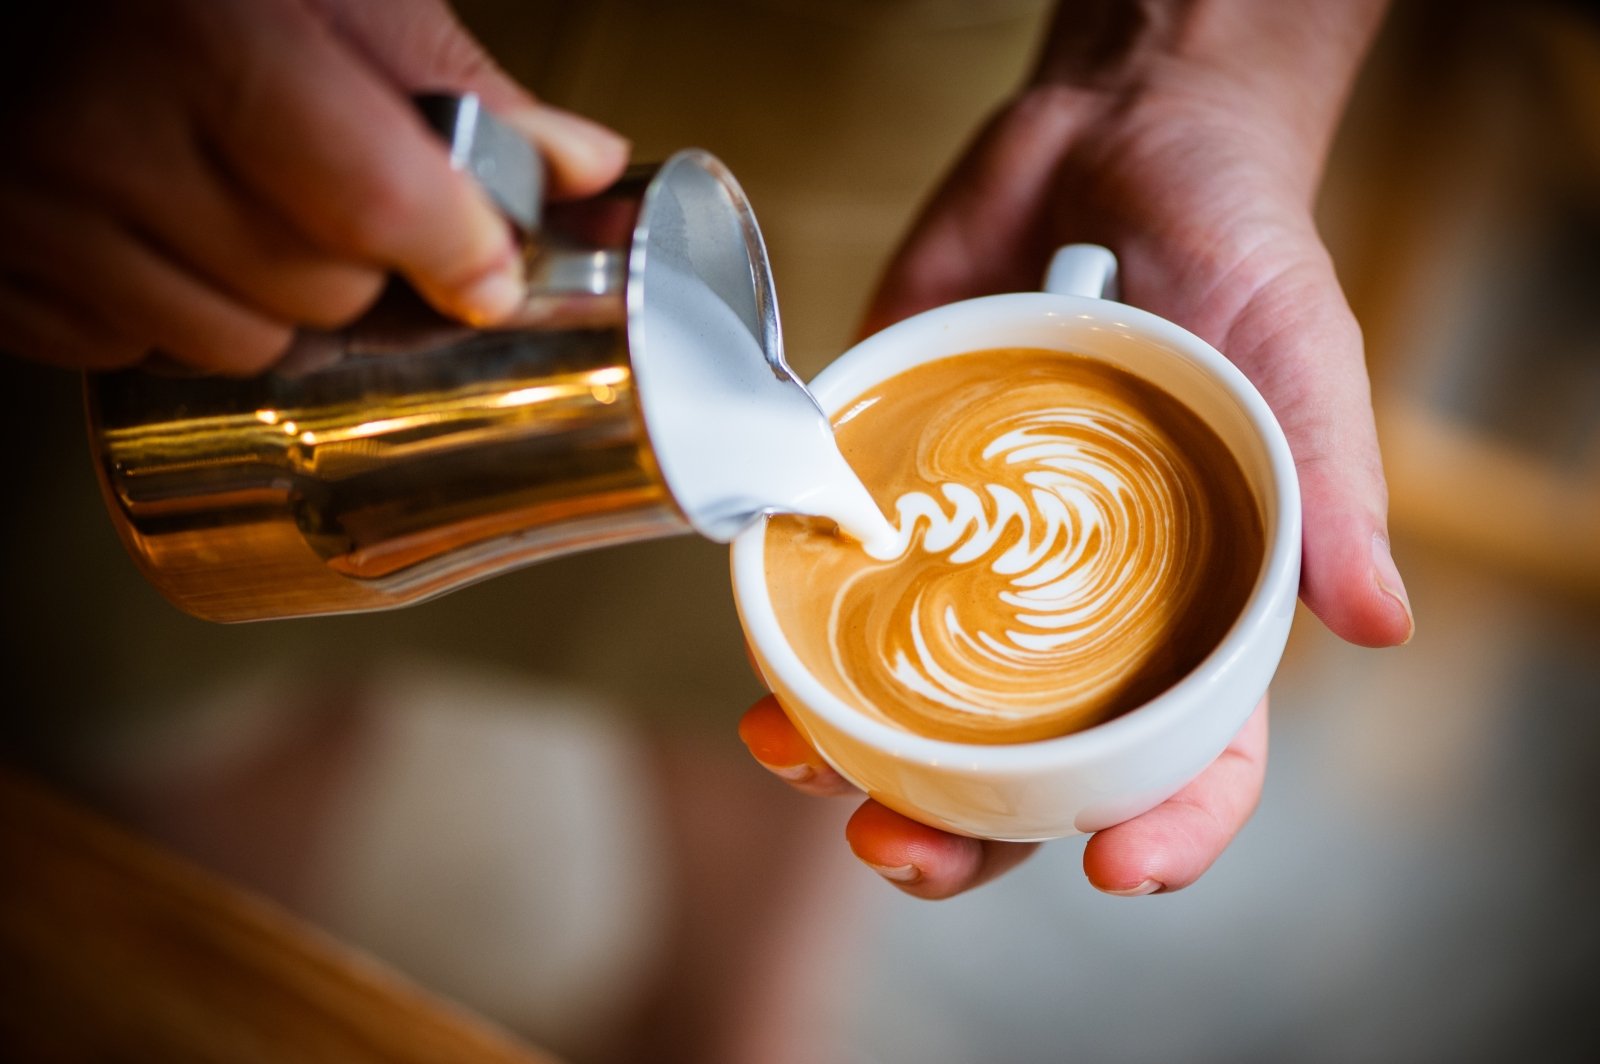 Kava ir dieta: kuo tai susiję bei kaip ją naudoti teisingai